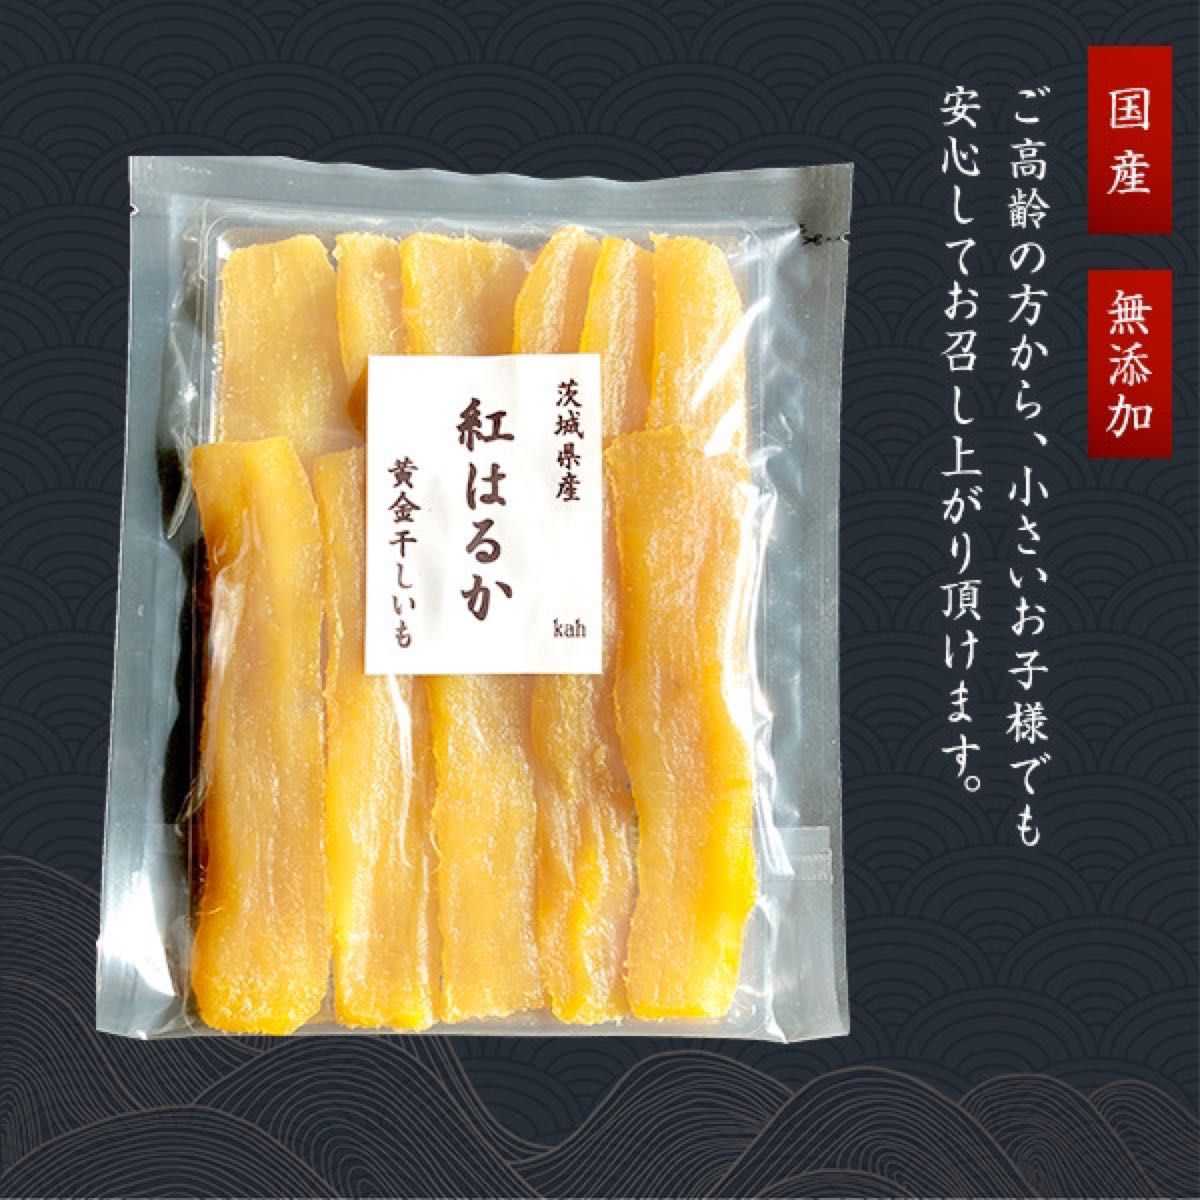 保存に便利なチャック付き袋入 茨城県産紅はるか 干し芋 たっぷり400g